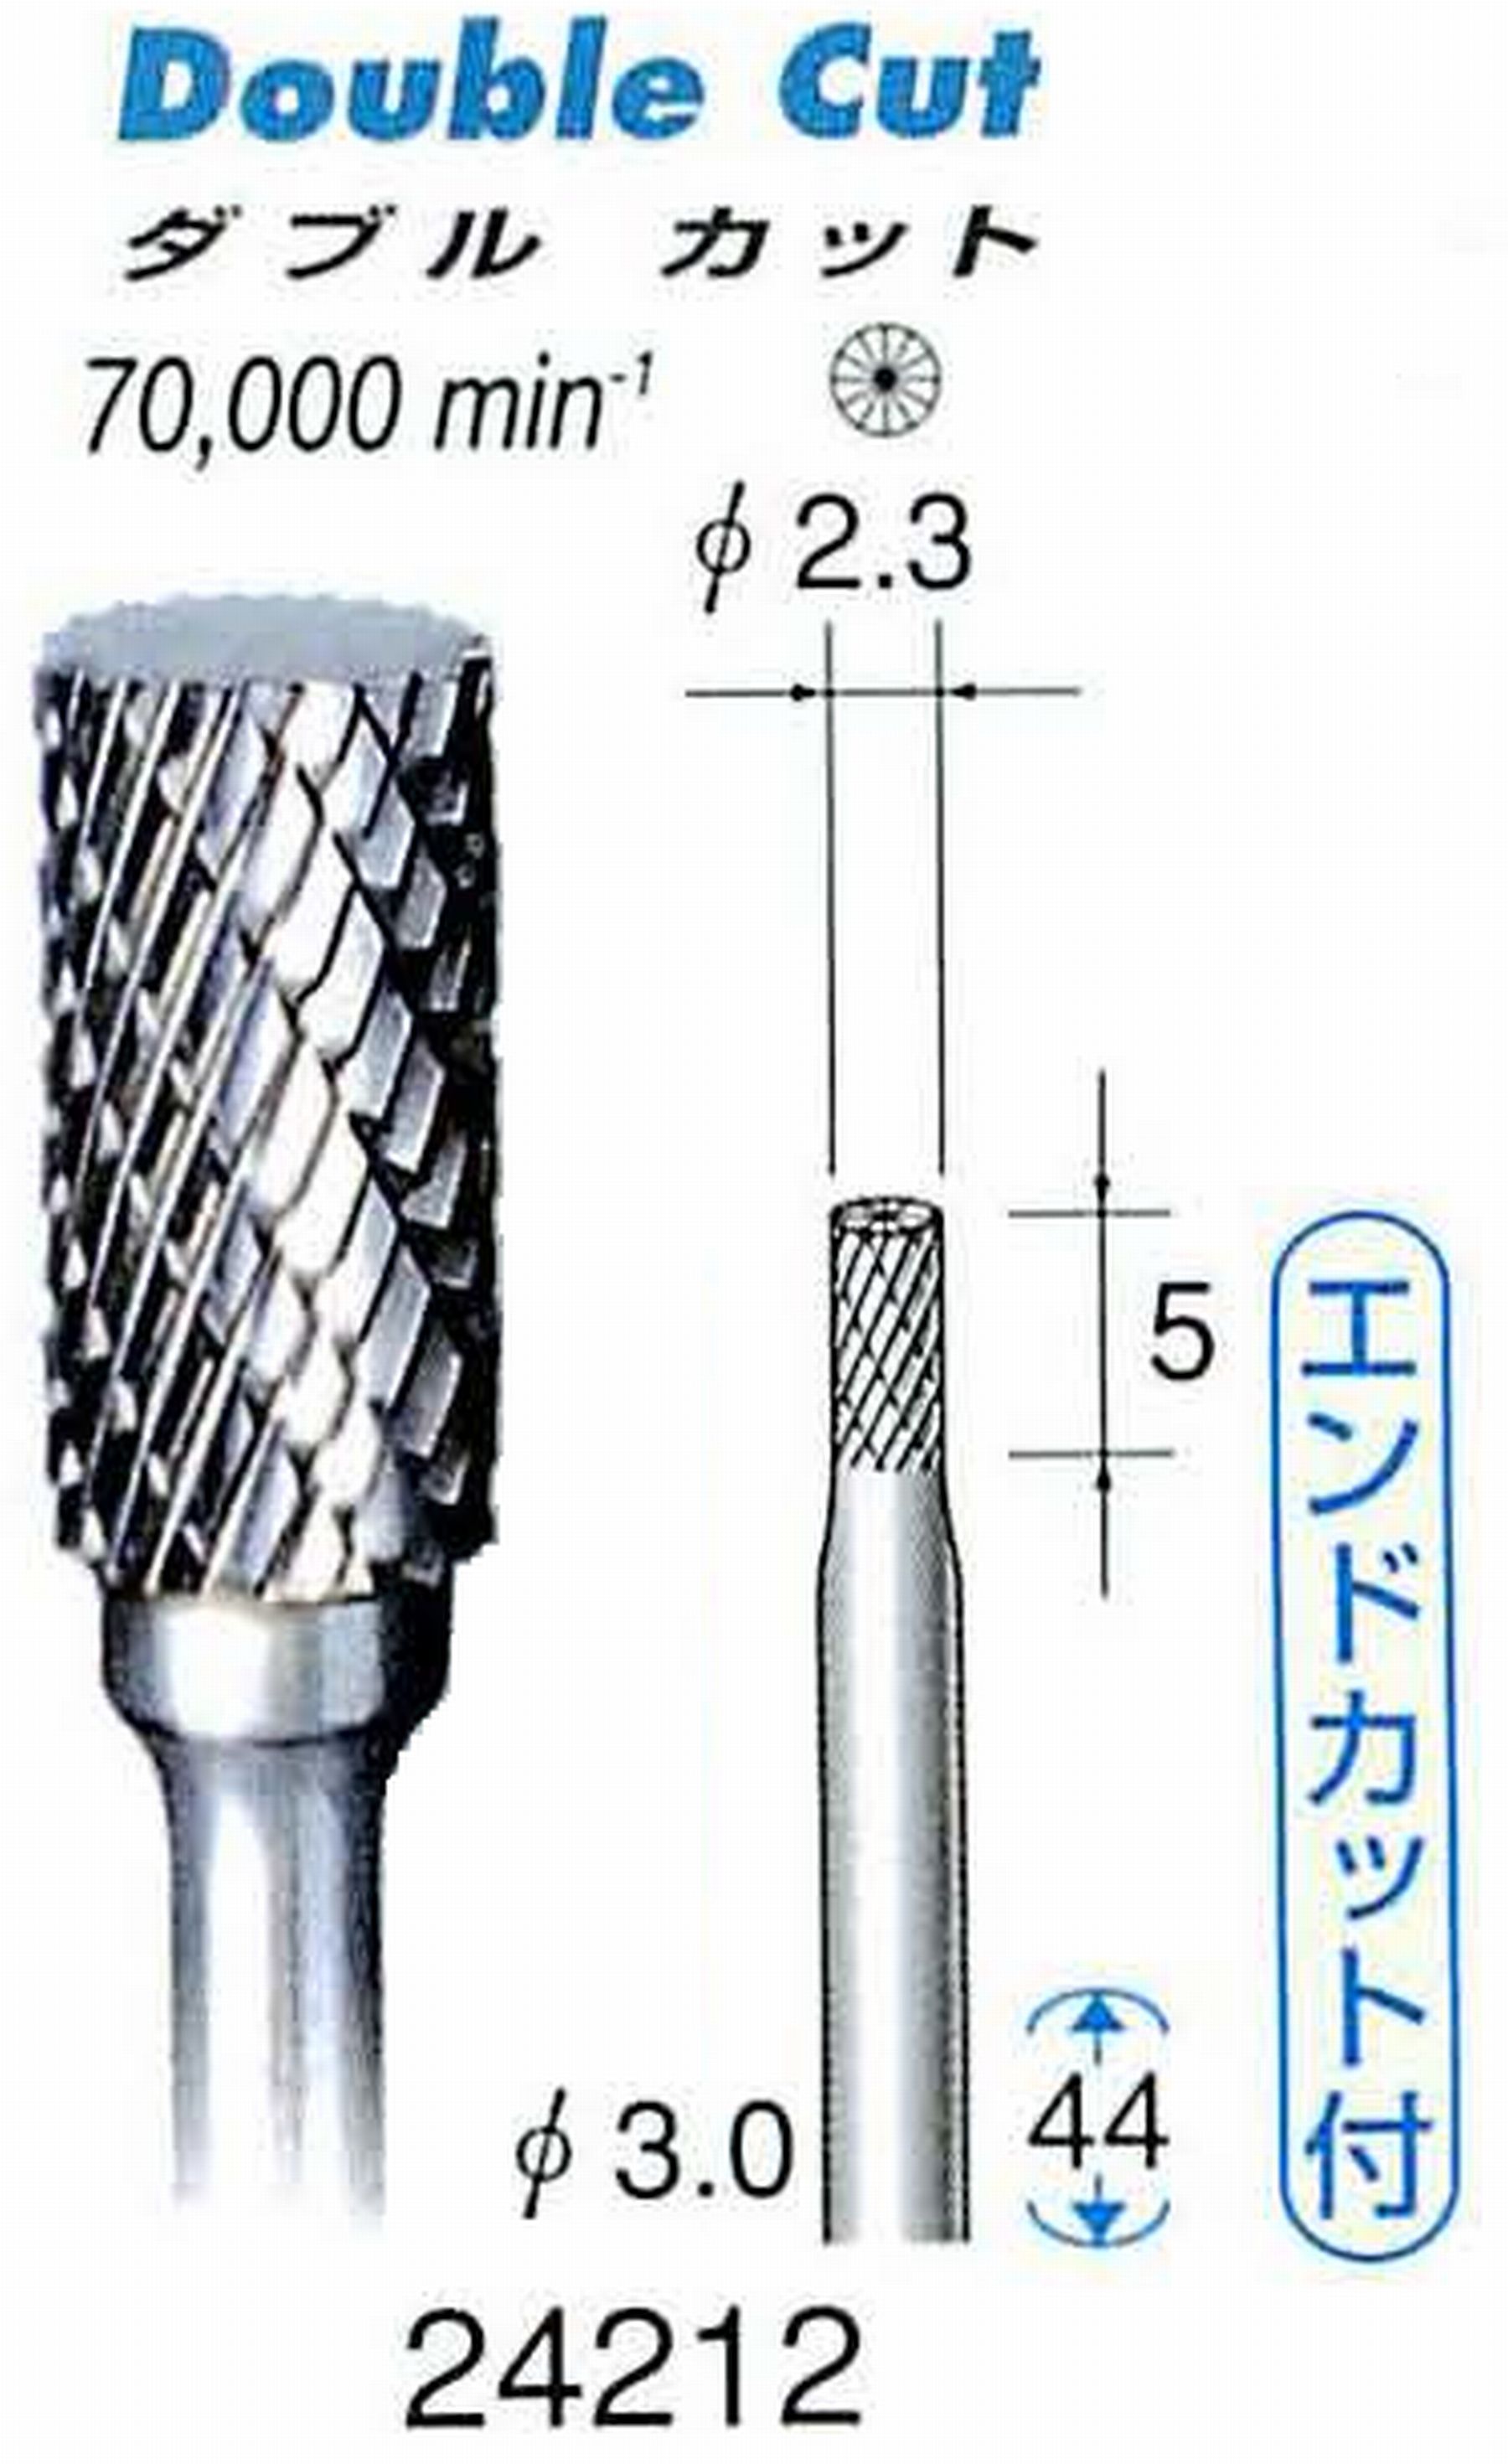 ナカニシ/NAKANISHI 超硬カッター 軸径(シャンク)φ3.0mm 24212